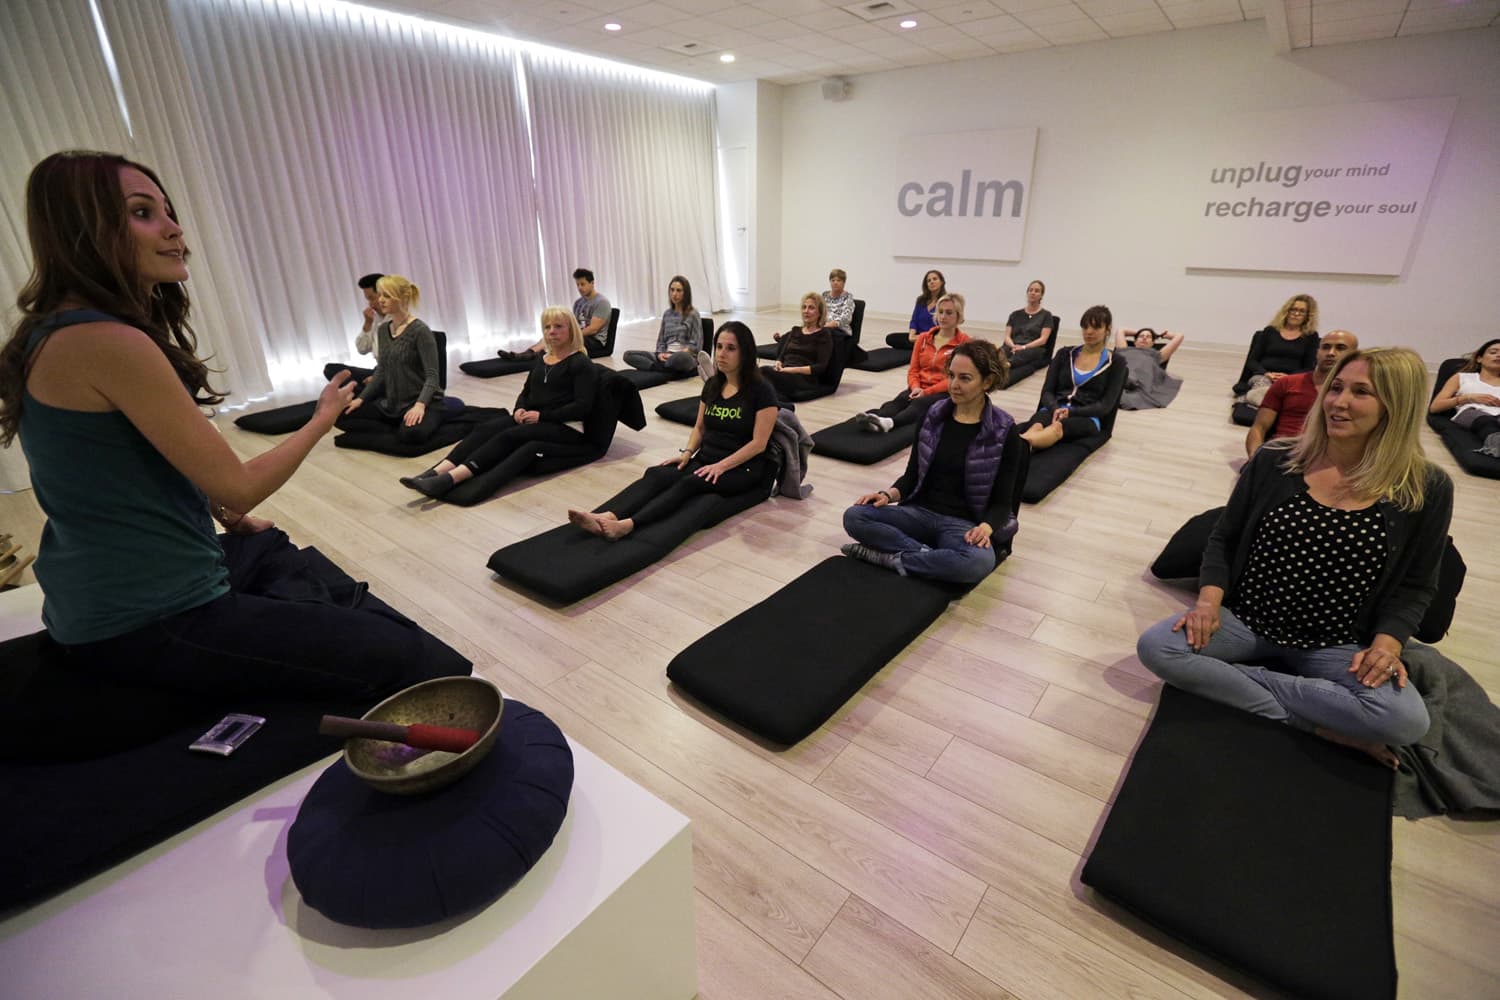 , Lauren Eckstrom, left, begins a session at Unplug Meditation Center in Los Angeles. (Nick Ut/AP)